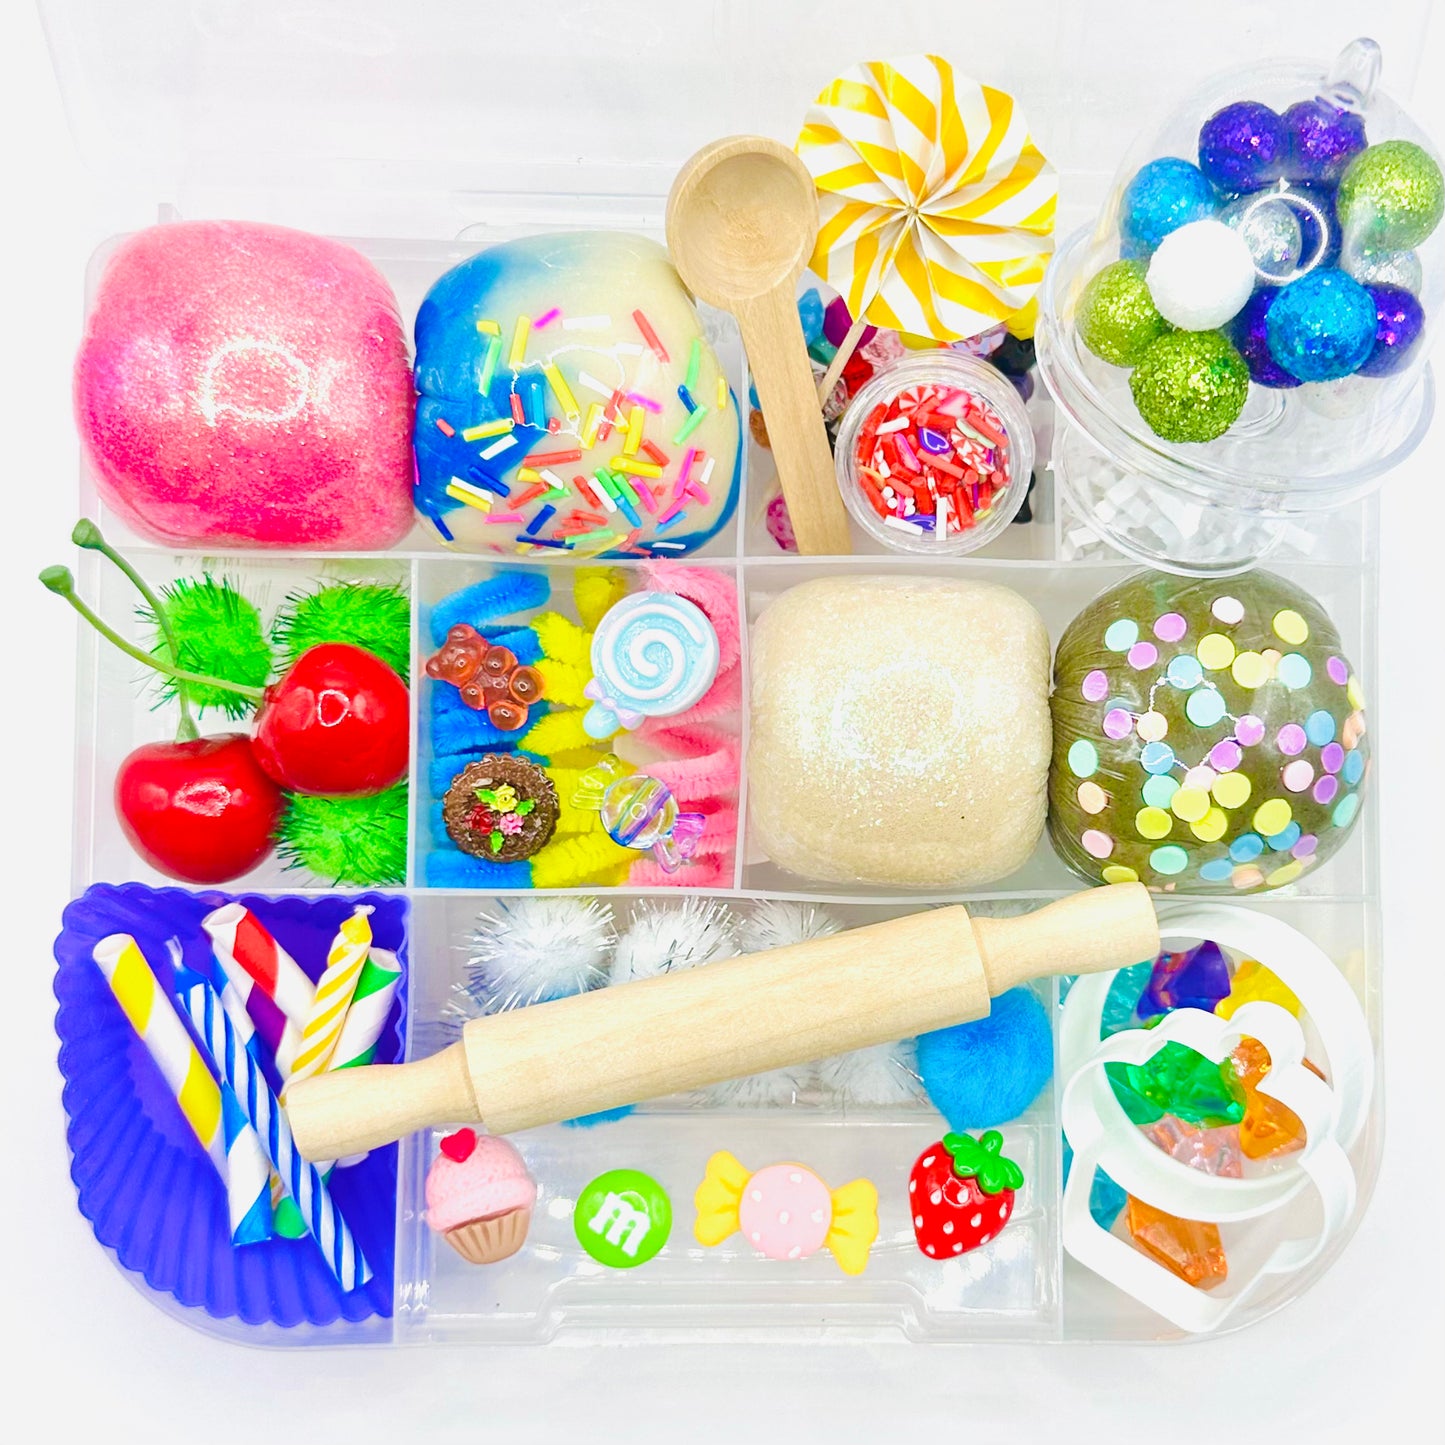 Bakery Playdough Sensory Kit Activity Toys Poppy and Pine Creations   